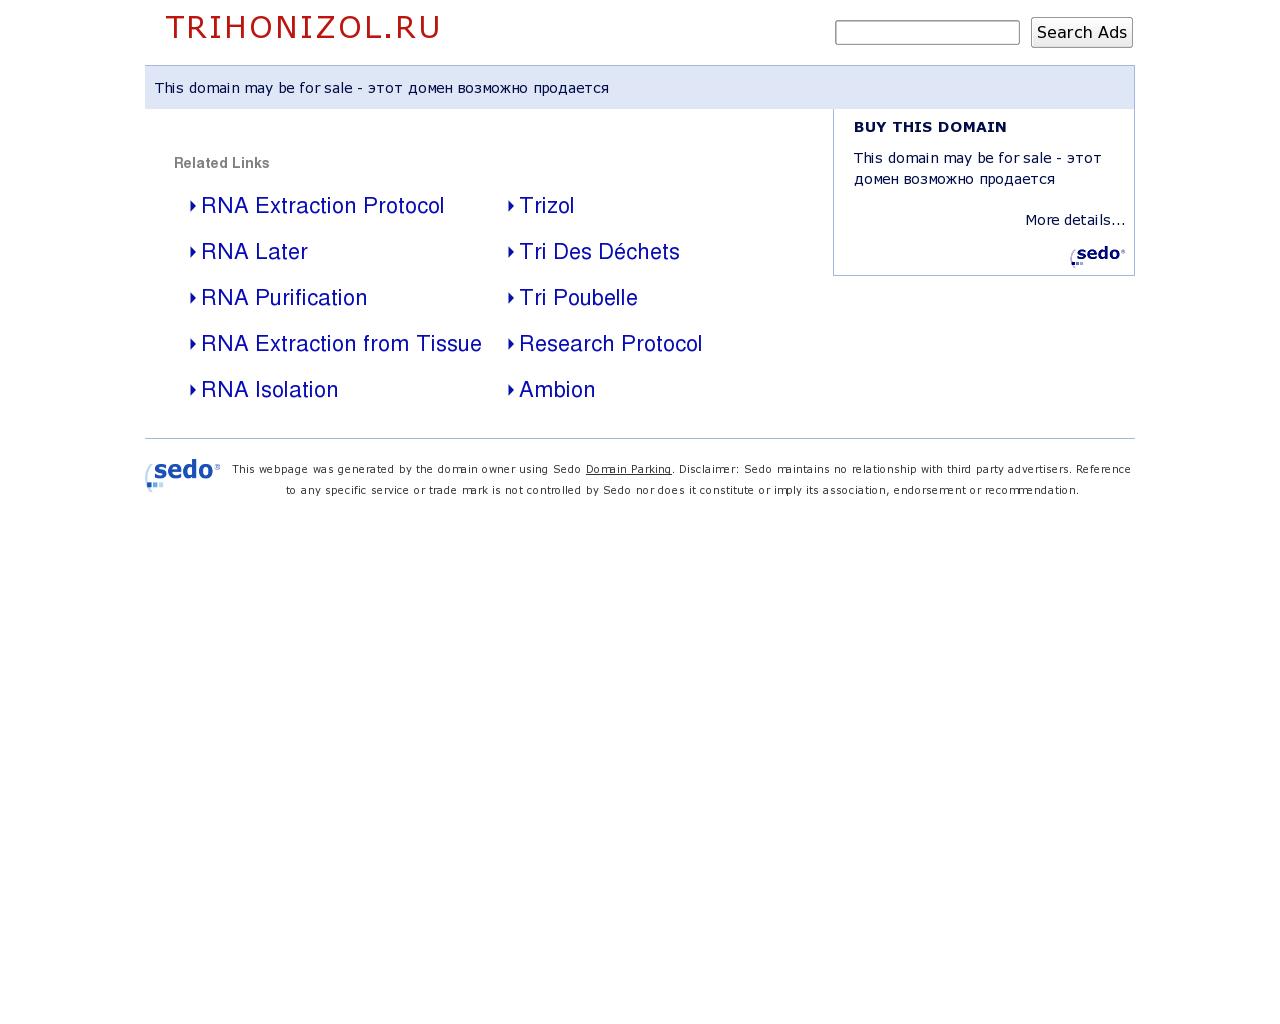 Изображение сайта trihonizol.ru в разрешении 1280x1024